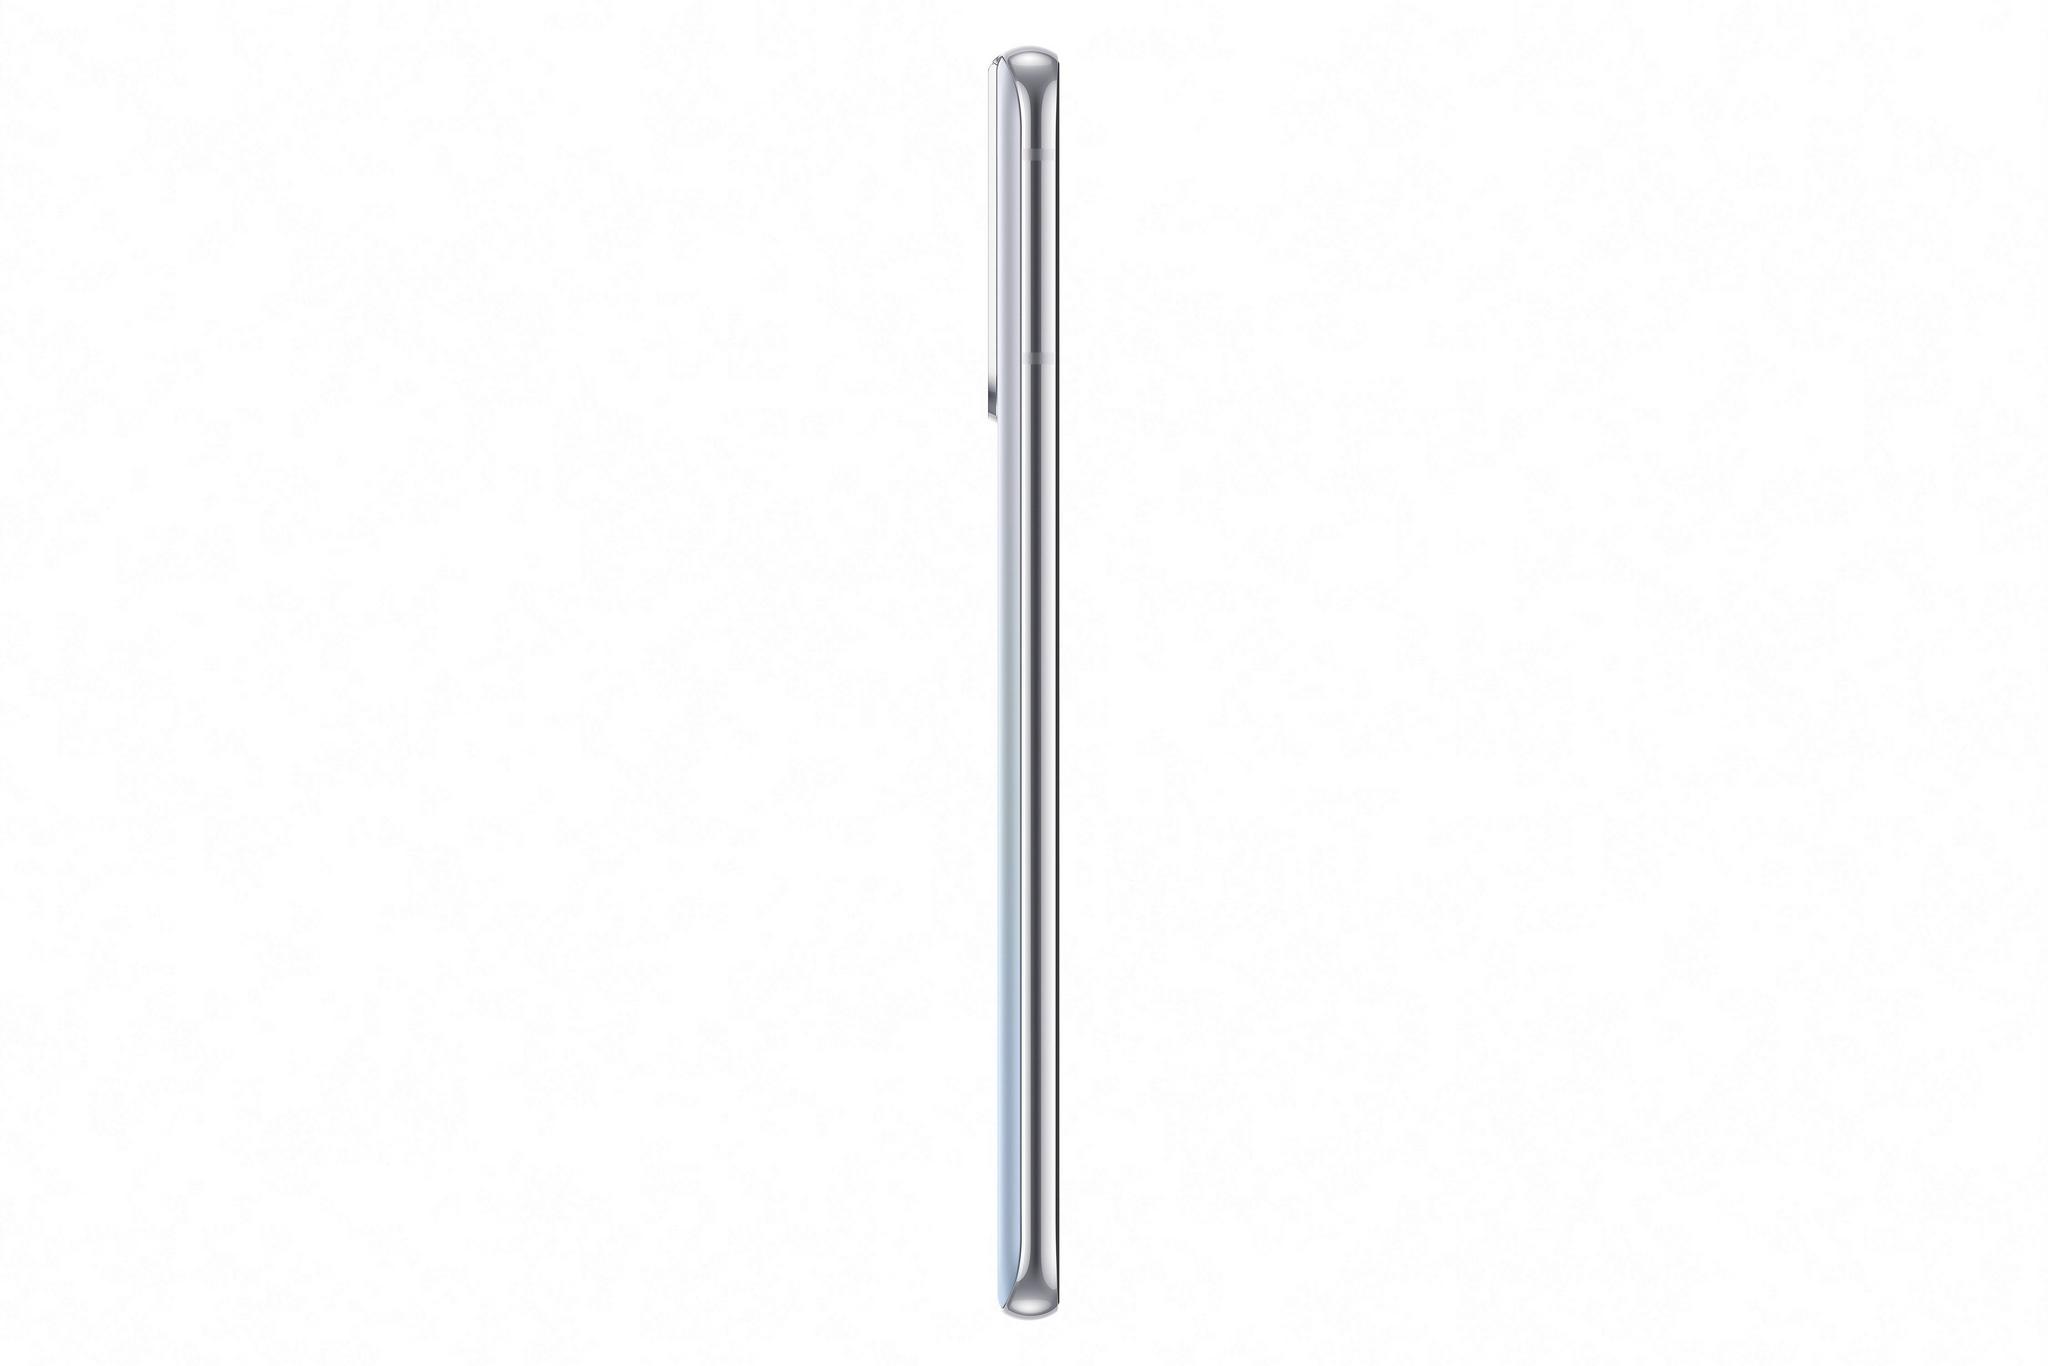 Samsung Galaxy S21+ 5G 128GB Phone - Silver